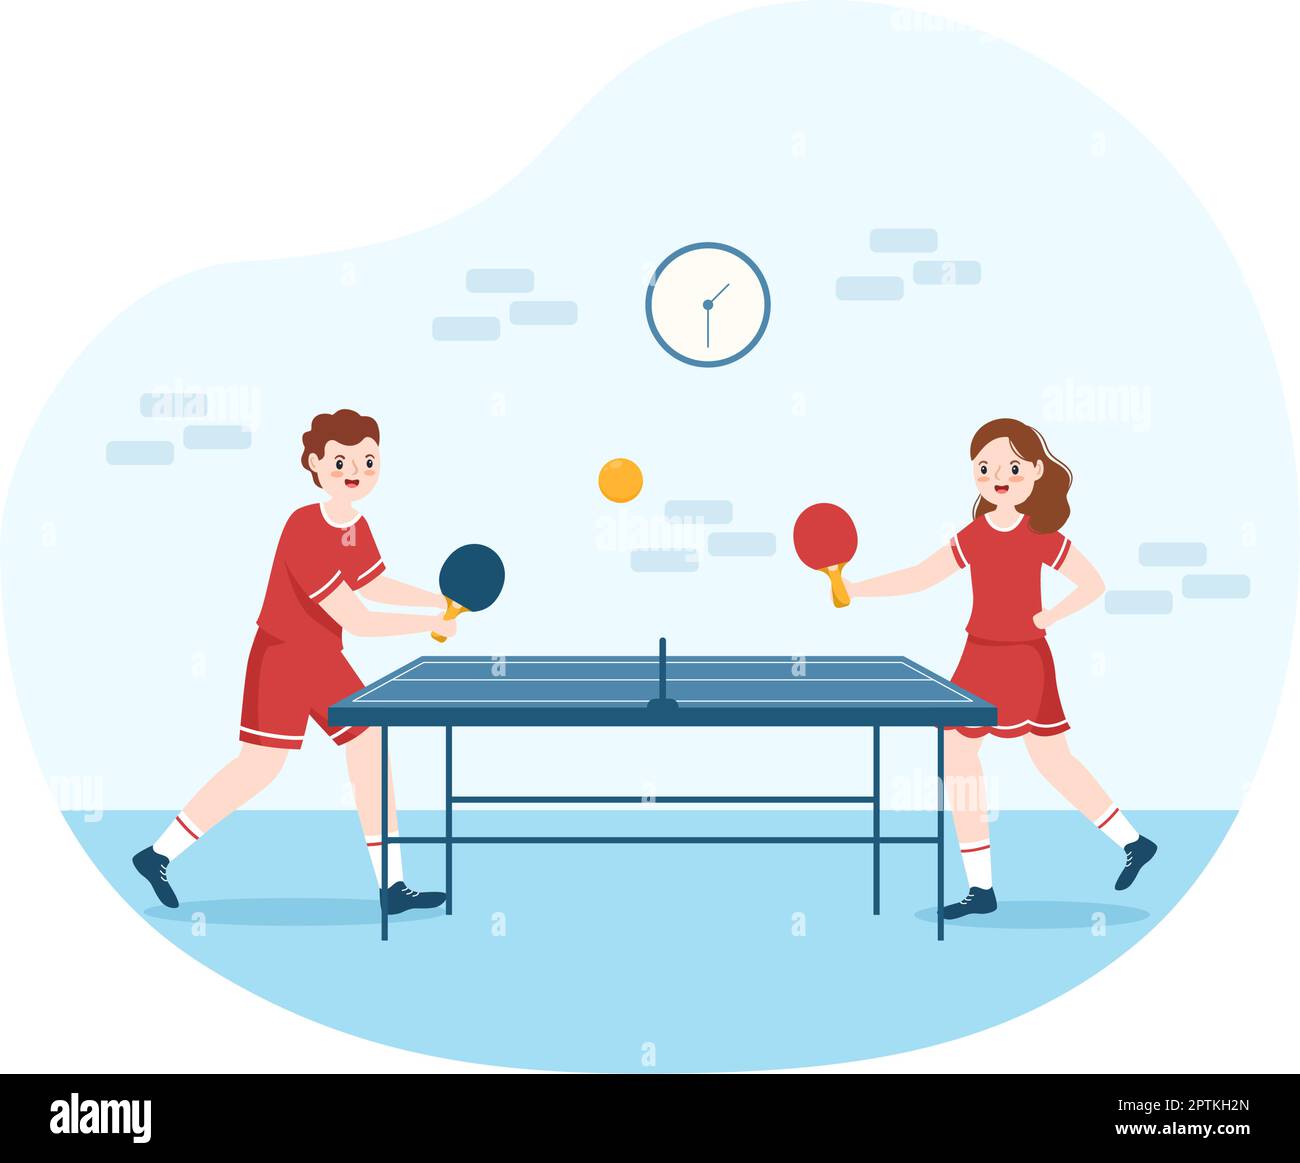 Les gens qui jouent au tennis de table Sports avec raquette et balle de  ping-pong jeu match dans le dessin-modèle de dessin main de dessin-modèle  Image Vectorielle Stock - Alamy